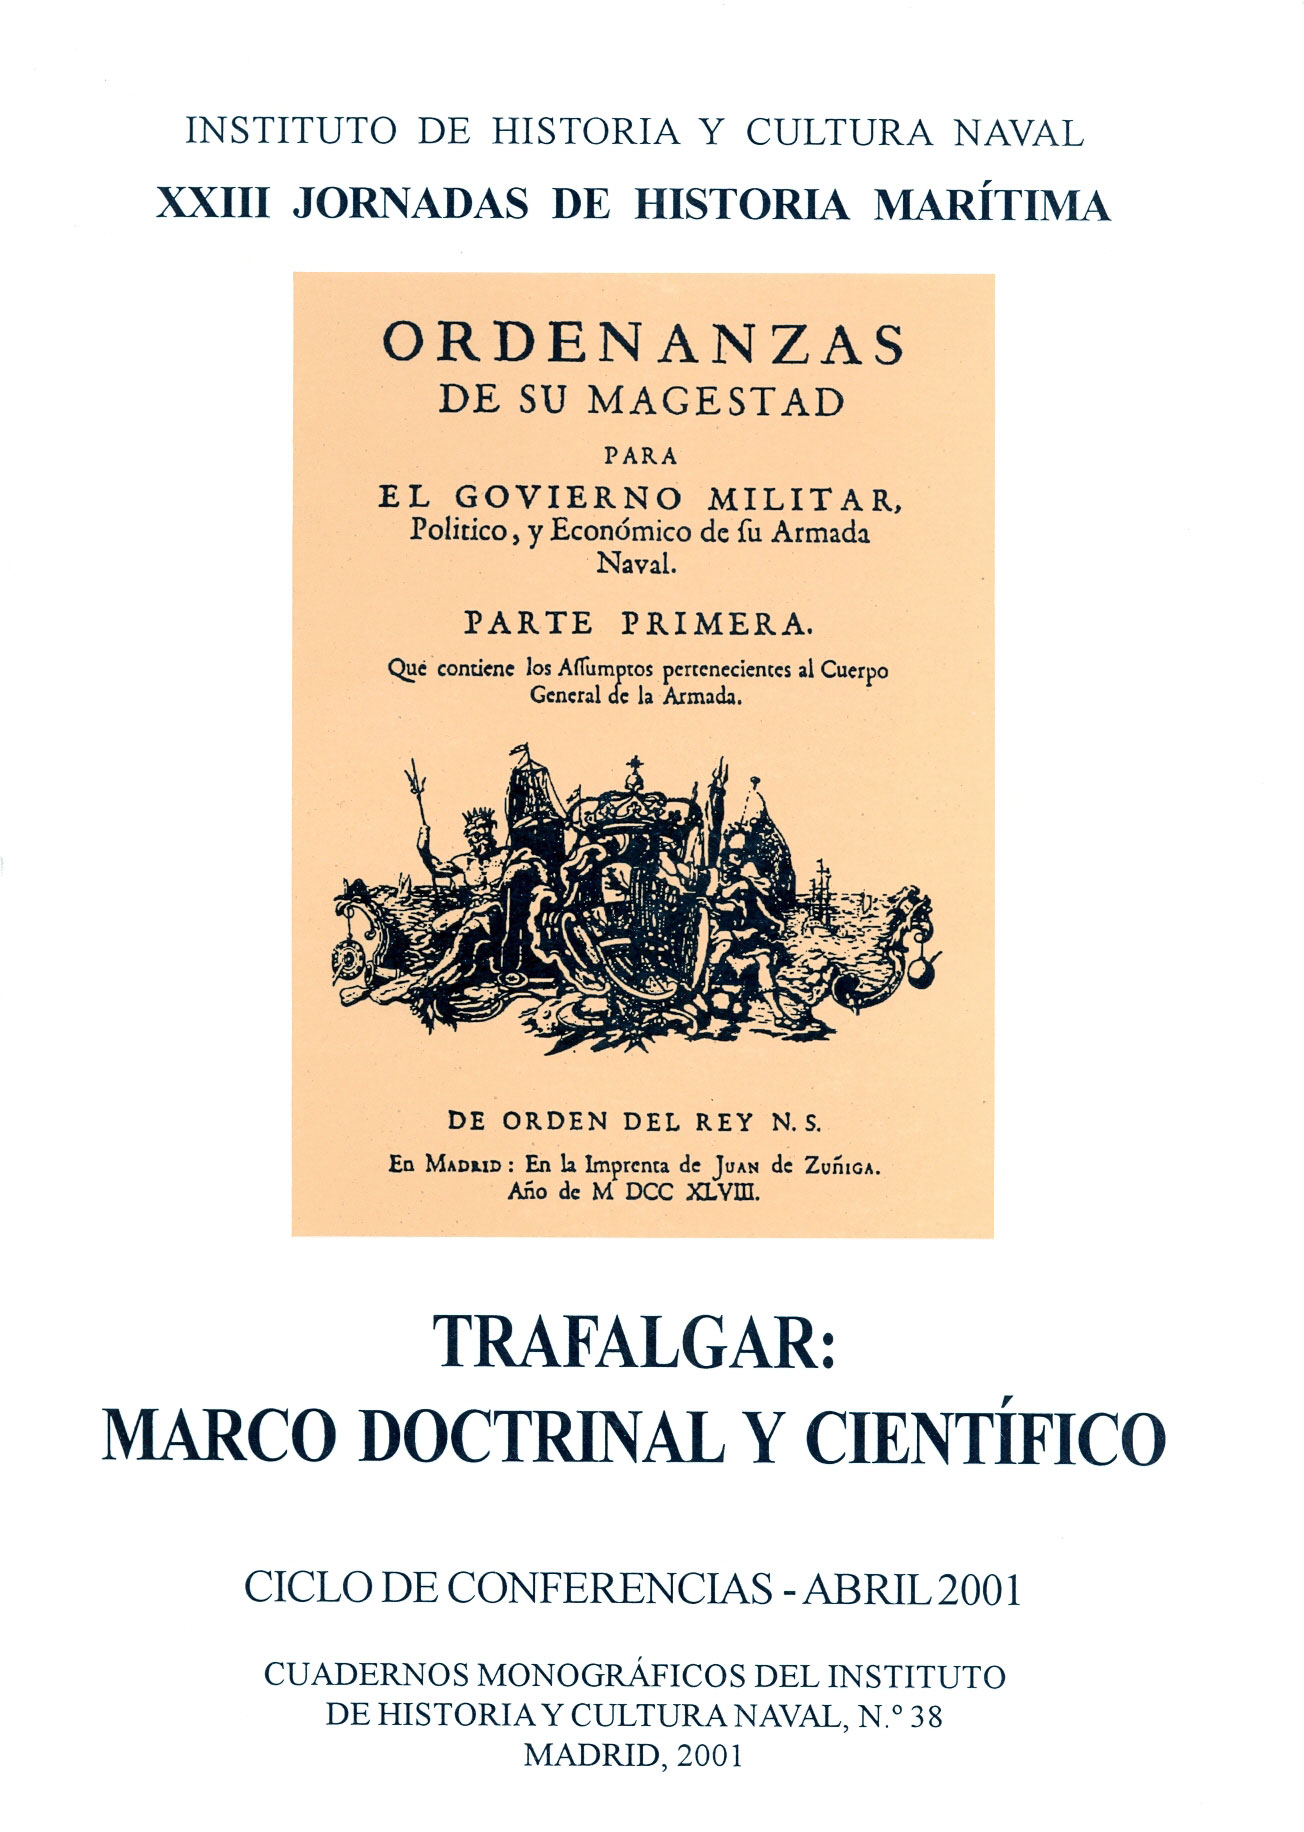 Trafalgar: marco doctrinal y científico